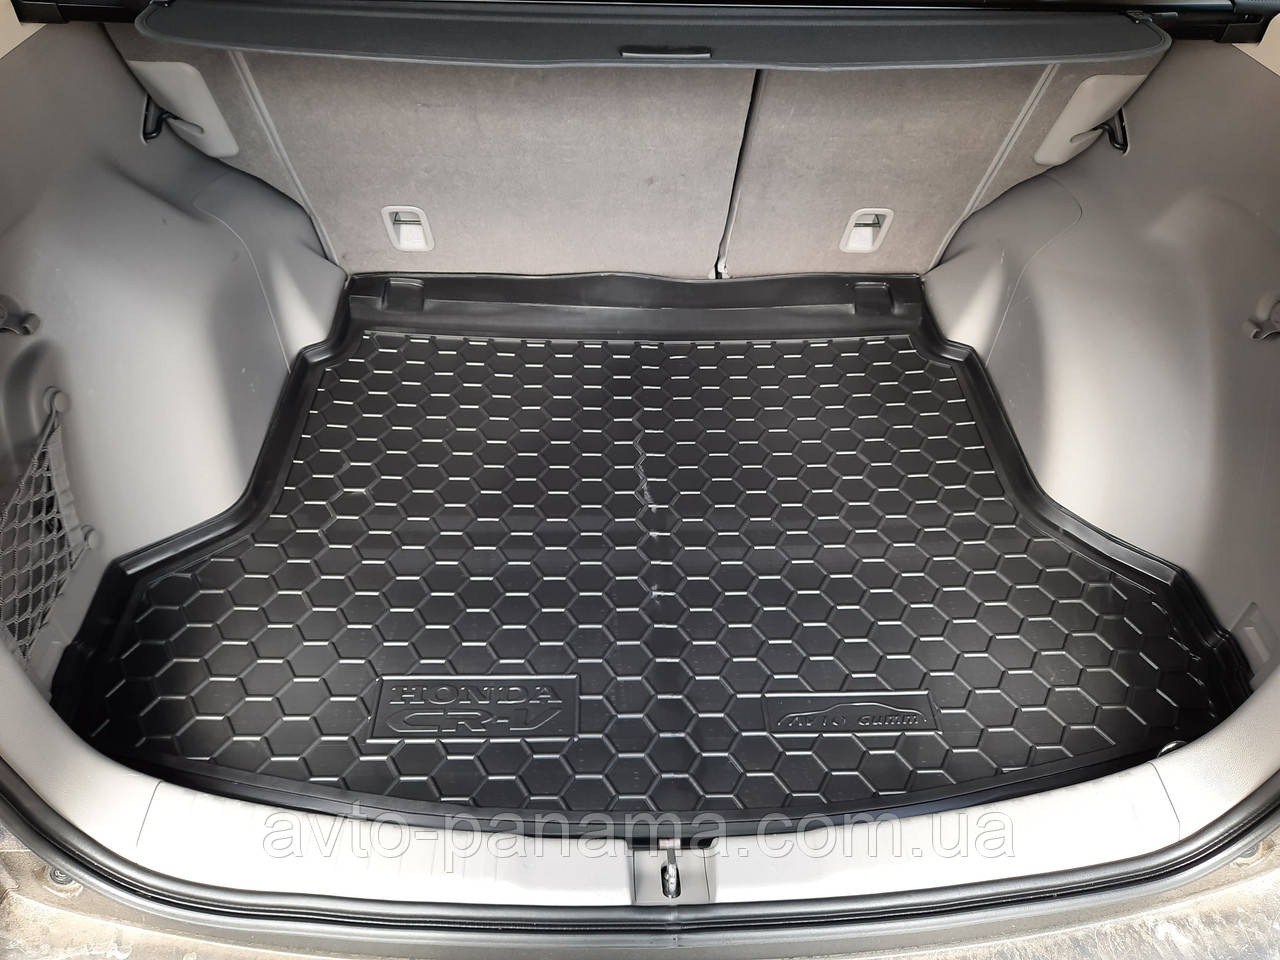 

Коврик в багажник Honda CR-V (Хонда СР-В) c 2012-2016, Черный